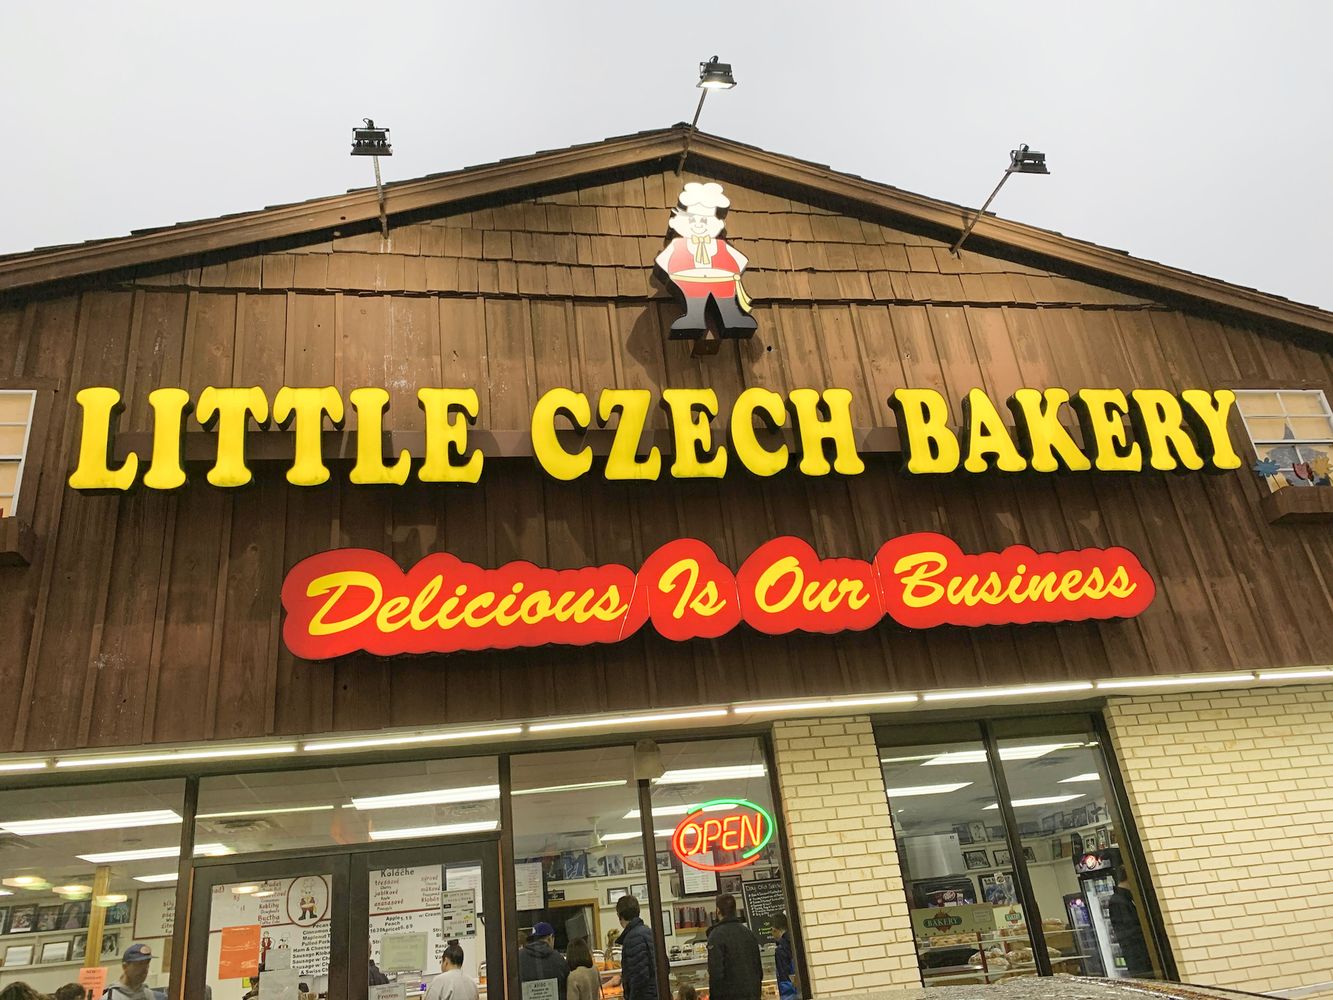 Czech Stop – Little Czech Bakery in West, Texas